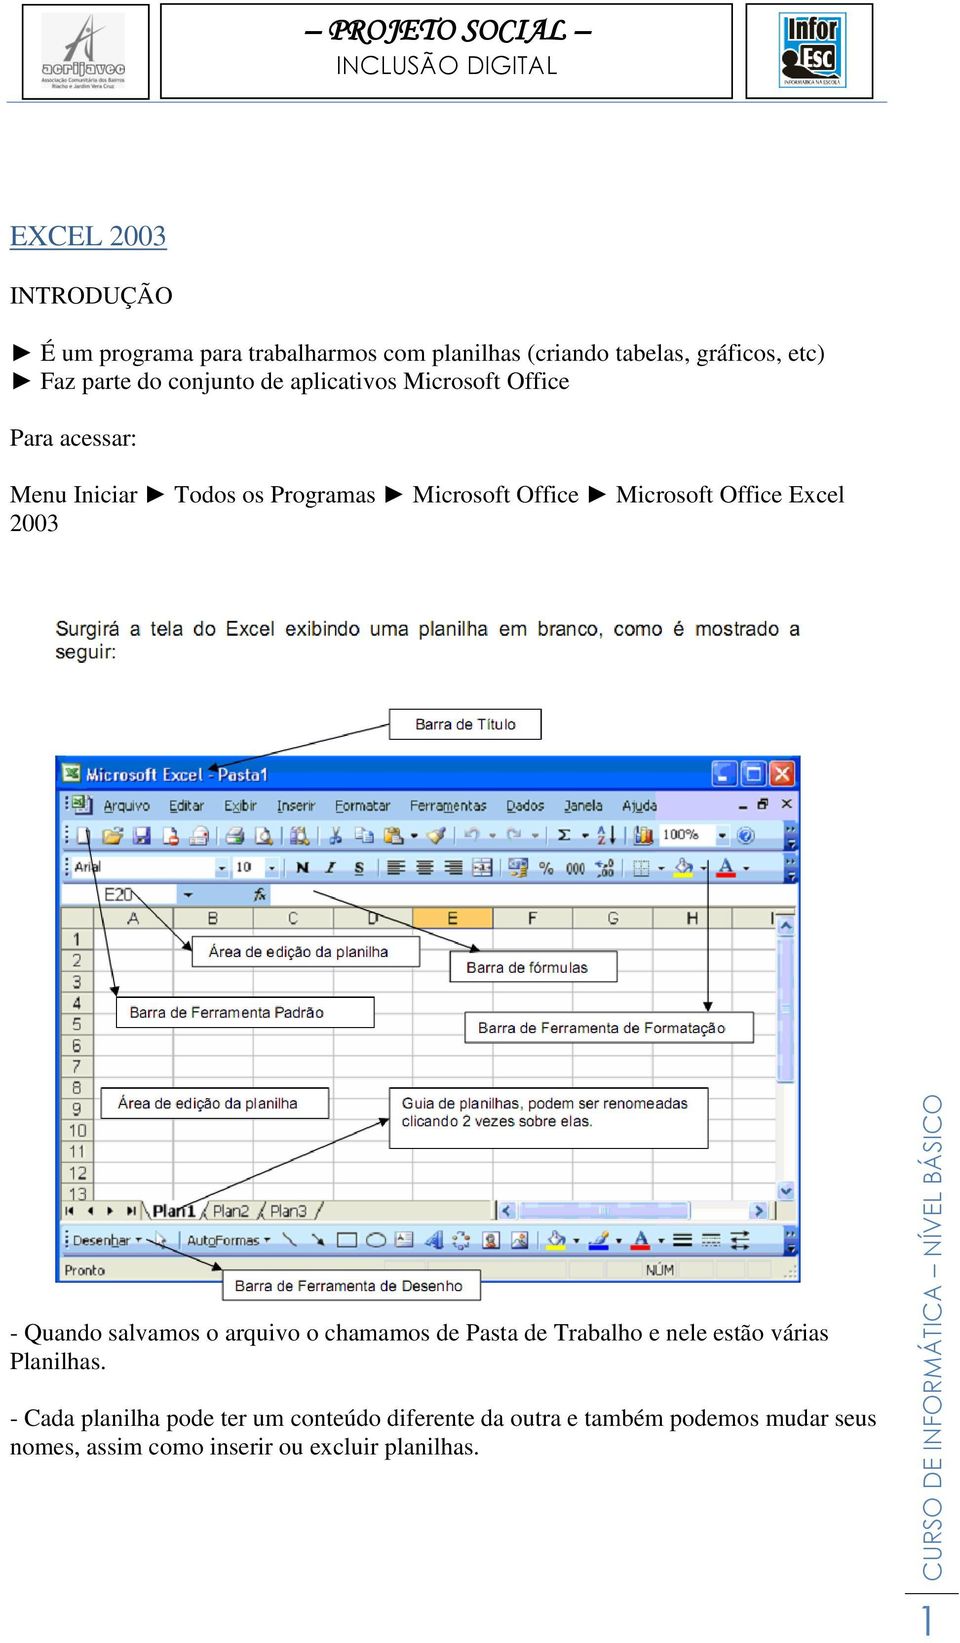 Office Excel 2003 - Quando salvamos o arquivo o chamamos de Pasta de Trabalho e nele estão várias Planilhas.